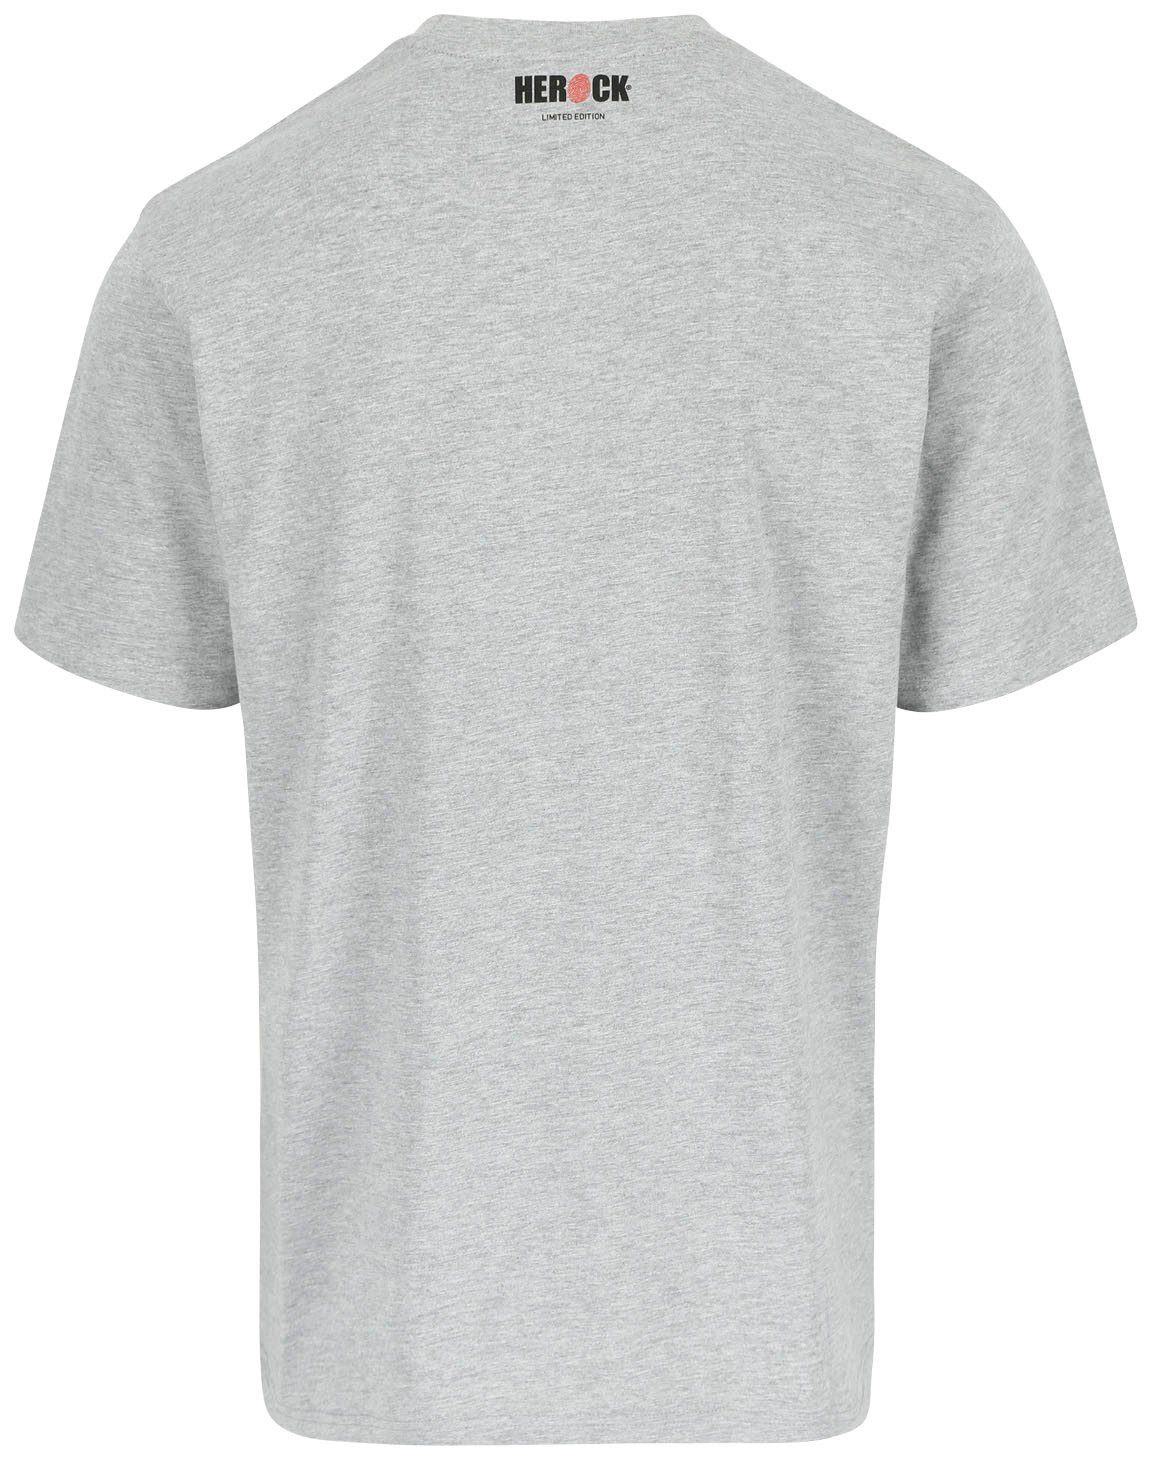 Herock T-Shirt Edition, Farben verschiedene hellgrau Worker in erhältlich Limited